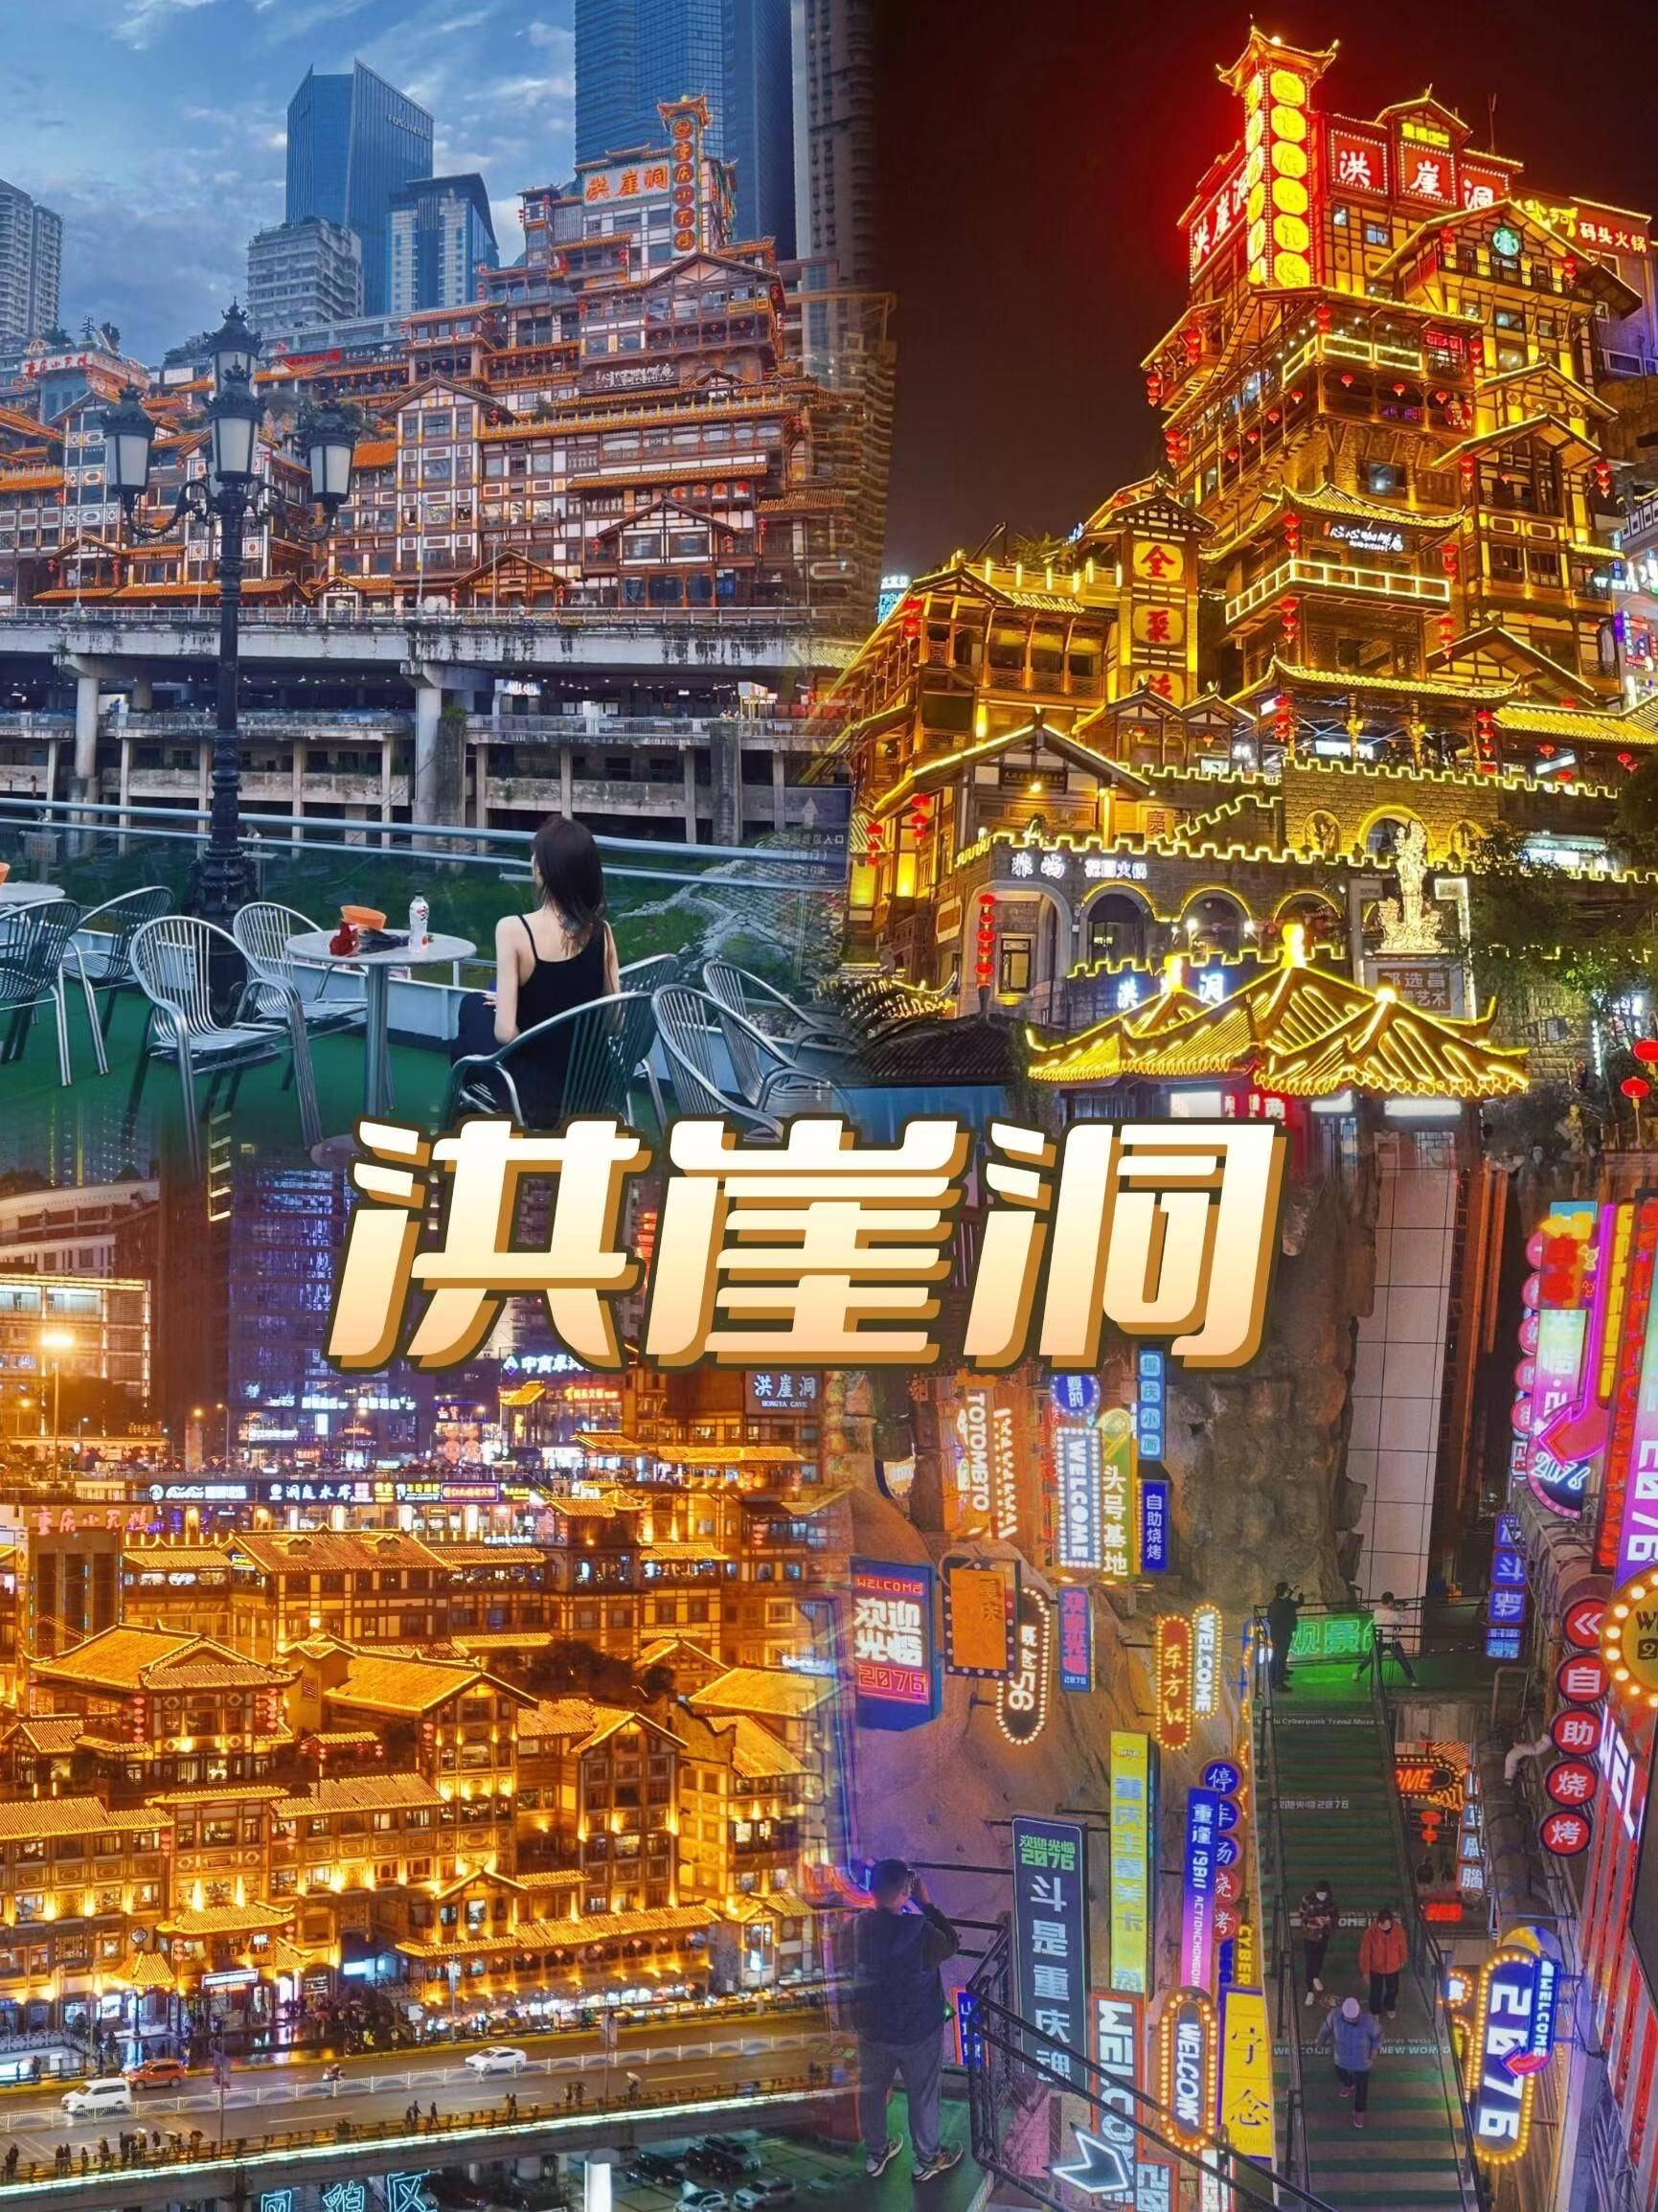 去重庆旅游此生必玩的超全景点路线推荐,完整版